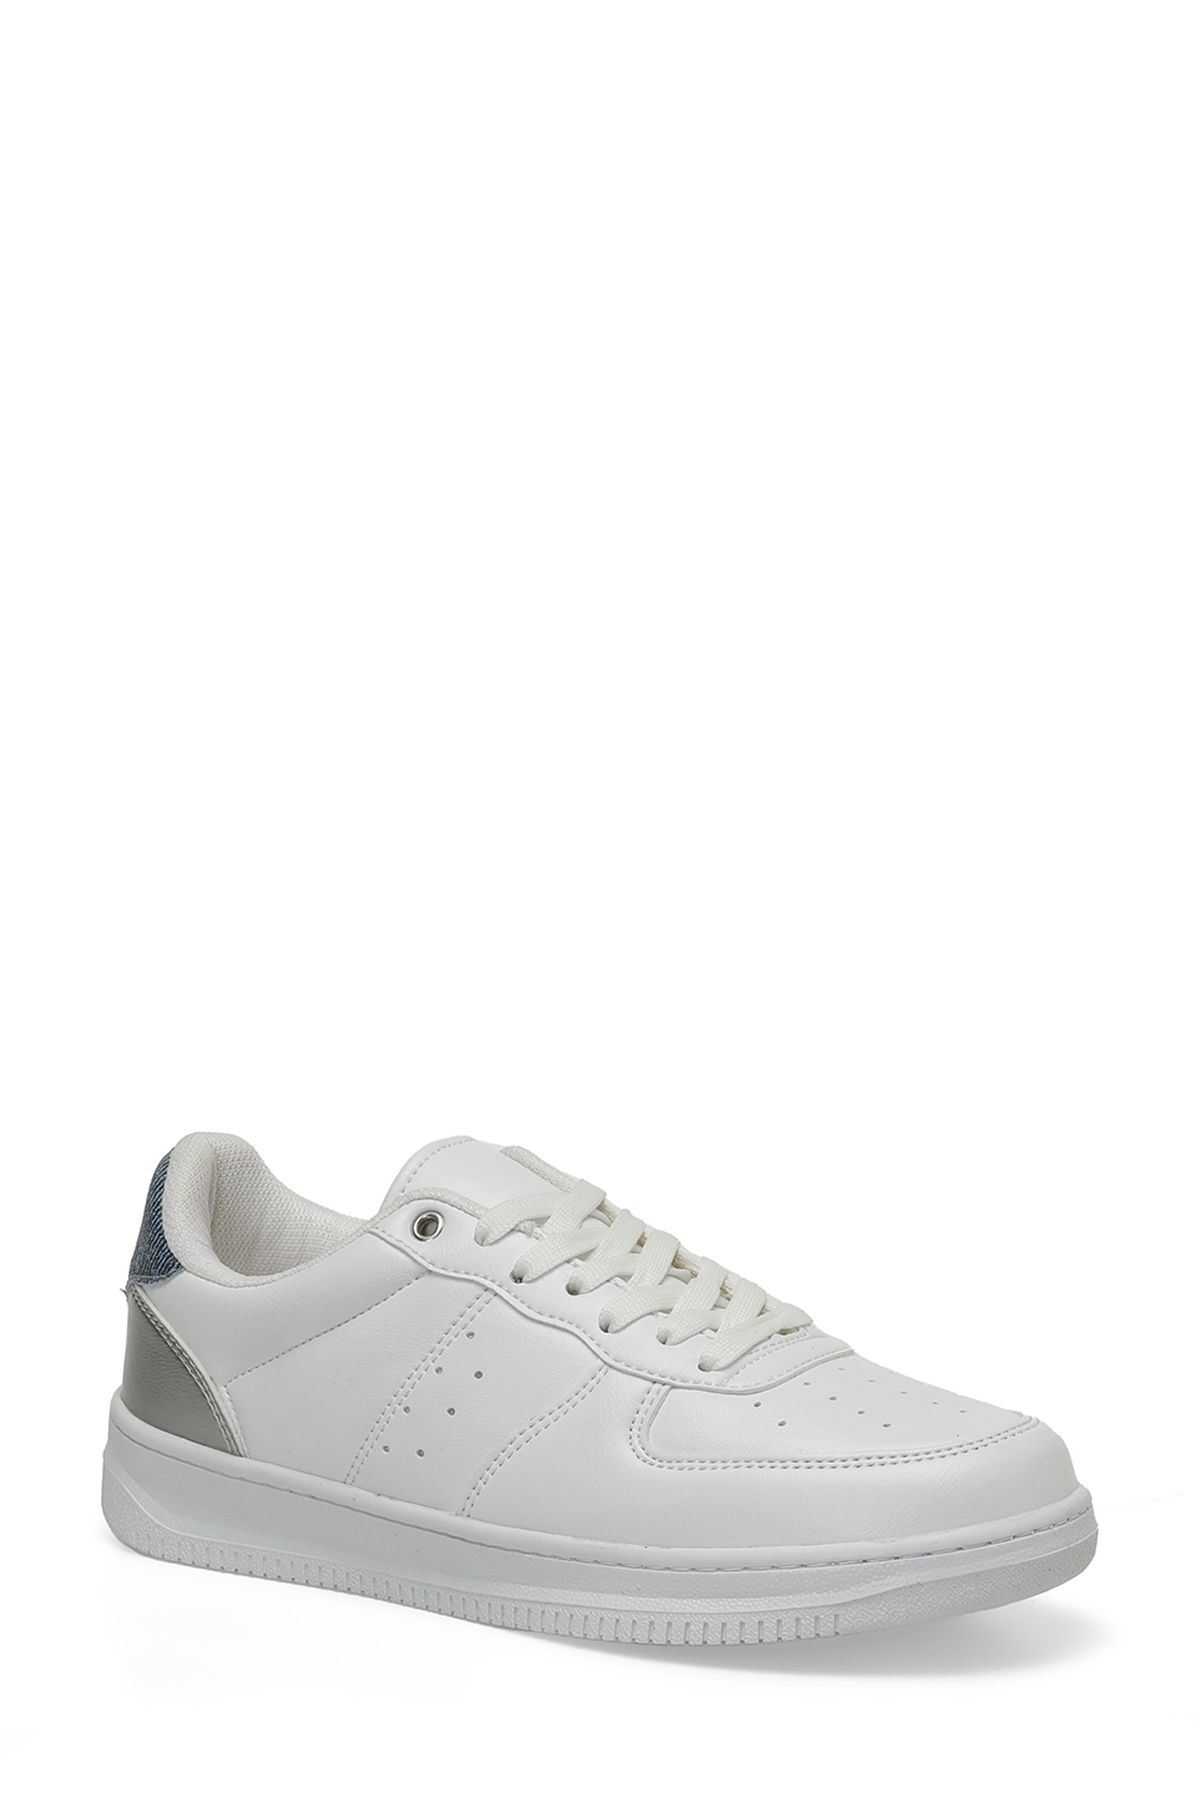 Torex TRX24S-004 4FX Beyaz Kadın Sneaker